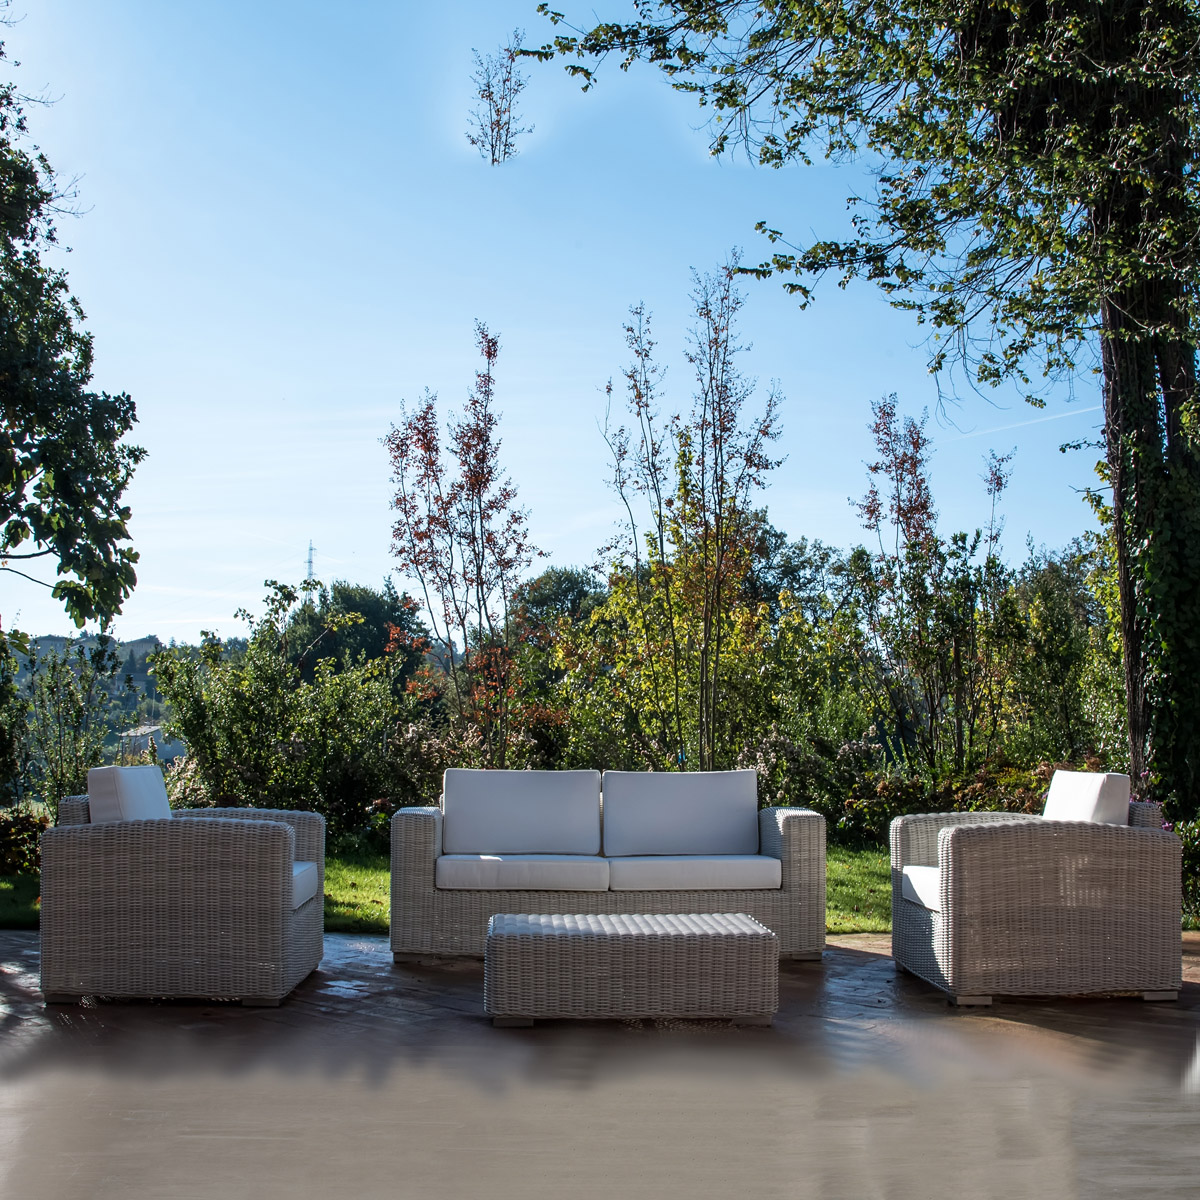 sancilio evotech molfetta - forniture outdoor arredo giardino sedie sedute poltrone divani complementi lounge sostenibilità ROSA SPLENDIANI ambientazione